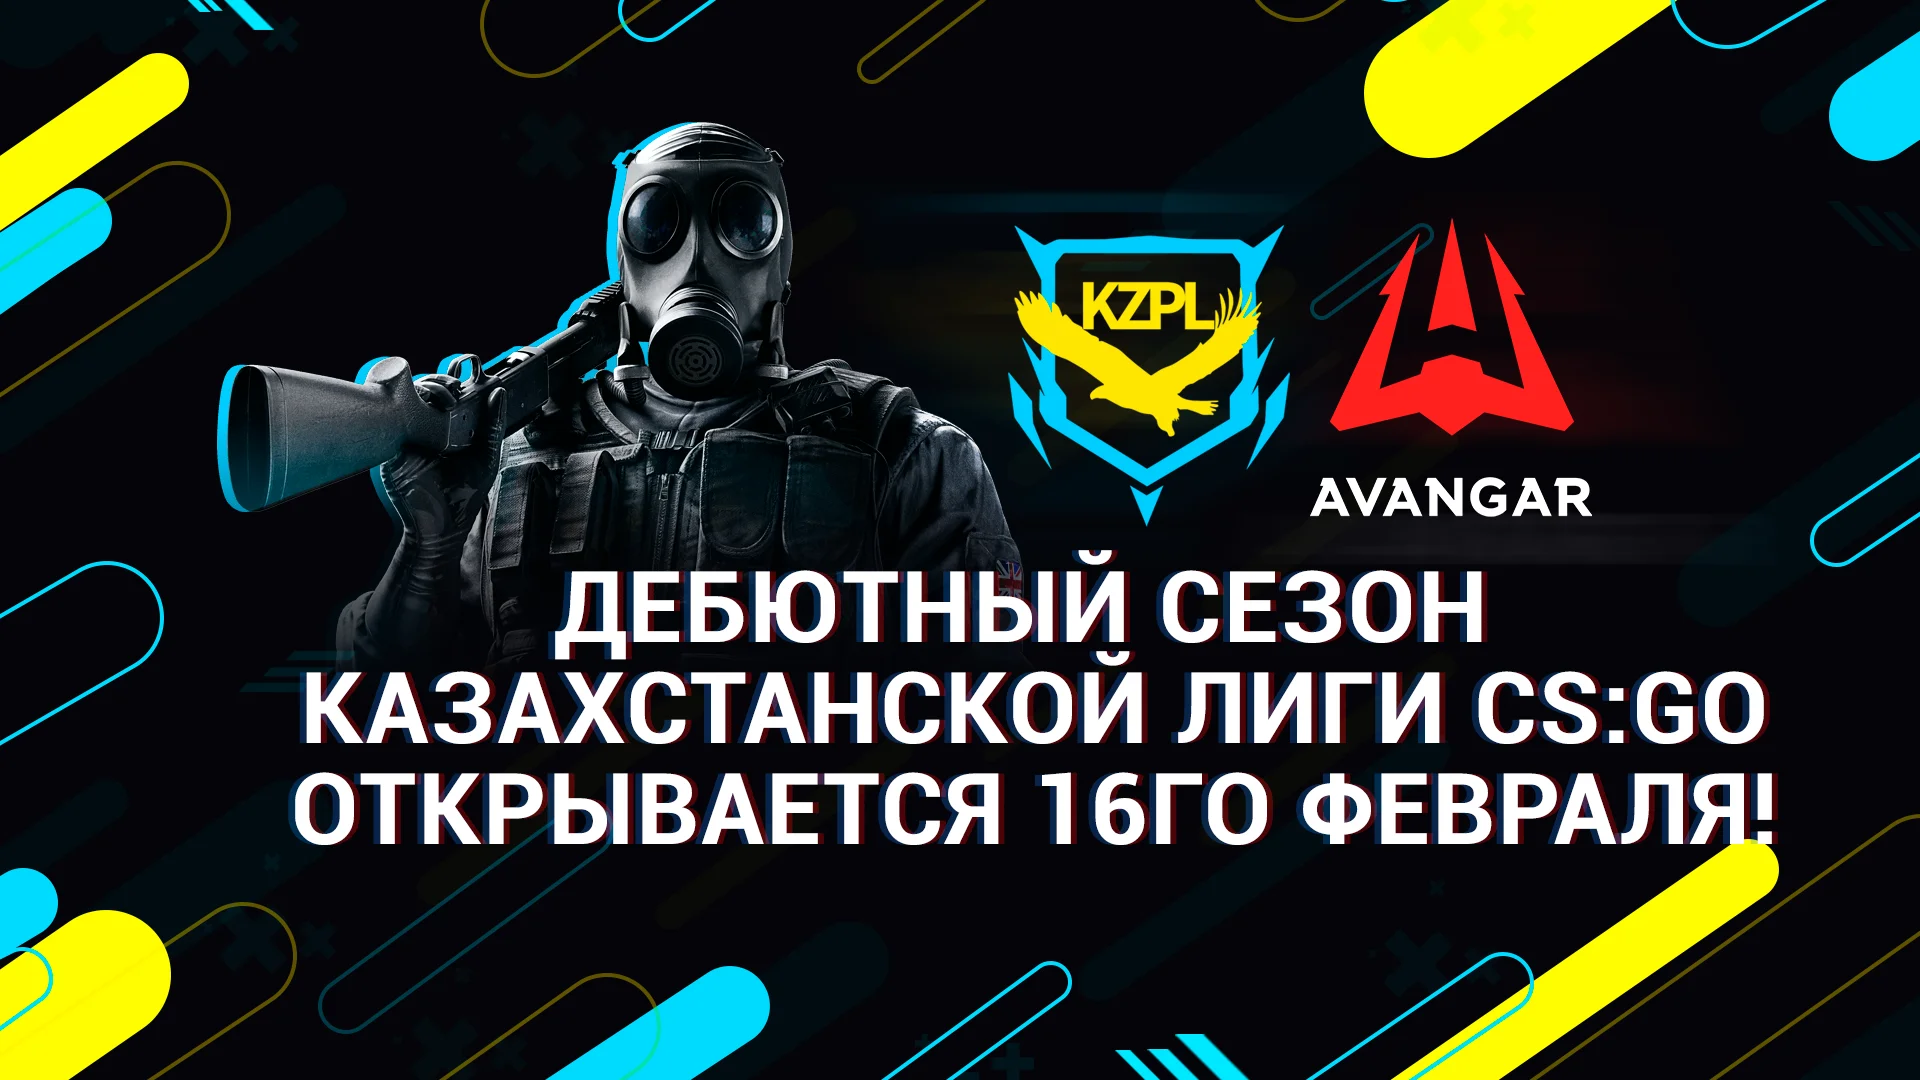 В Казахстане появится своя лига по CS:GO с хорошим пингом - фото 1